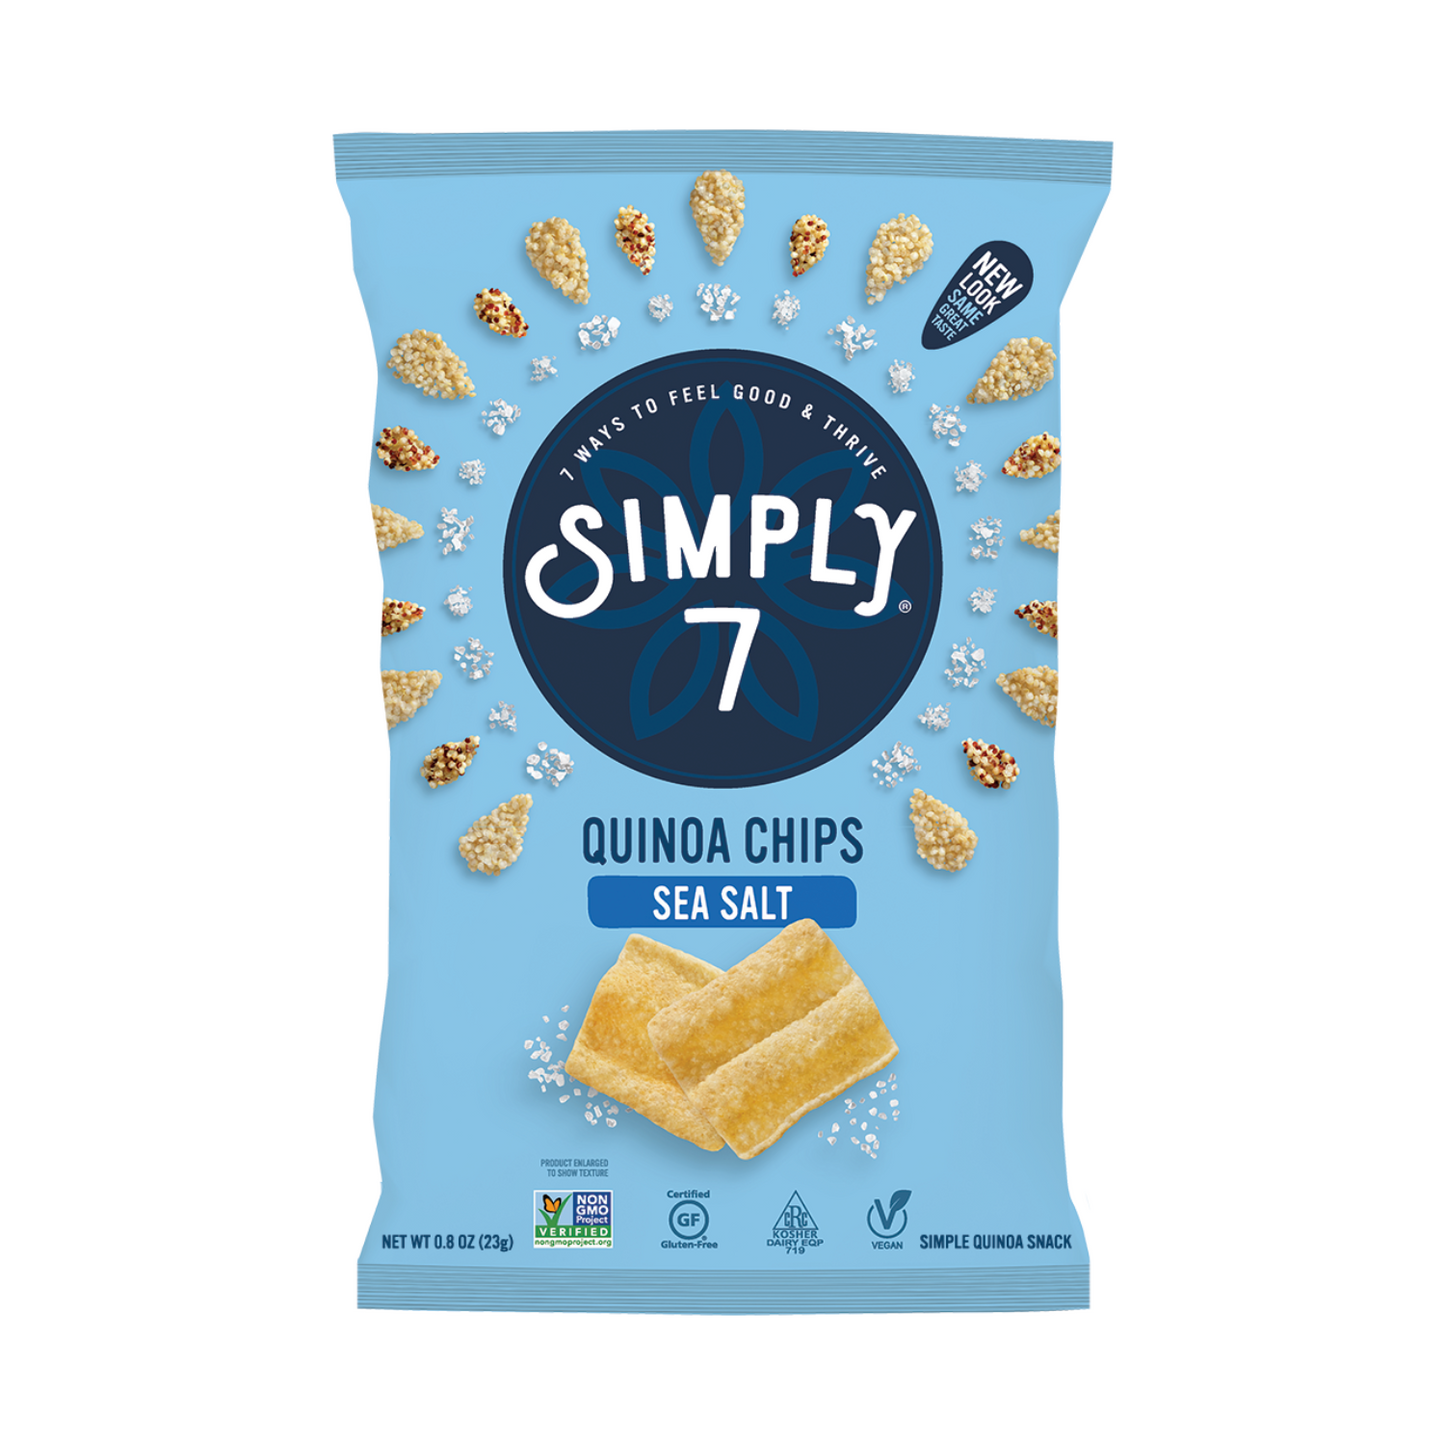 Simply 7 Quinoa Chips - Sea Salt, 23 g